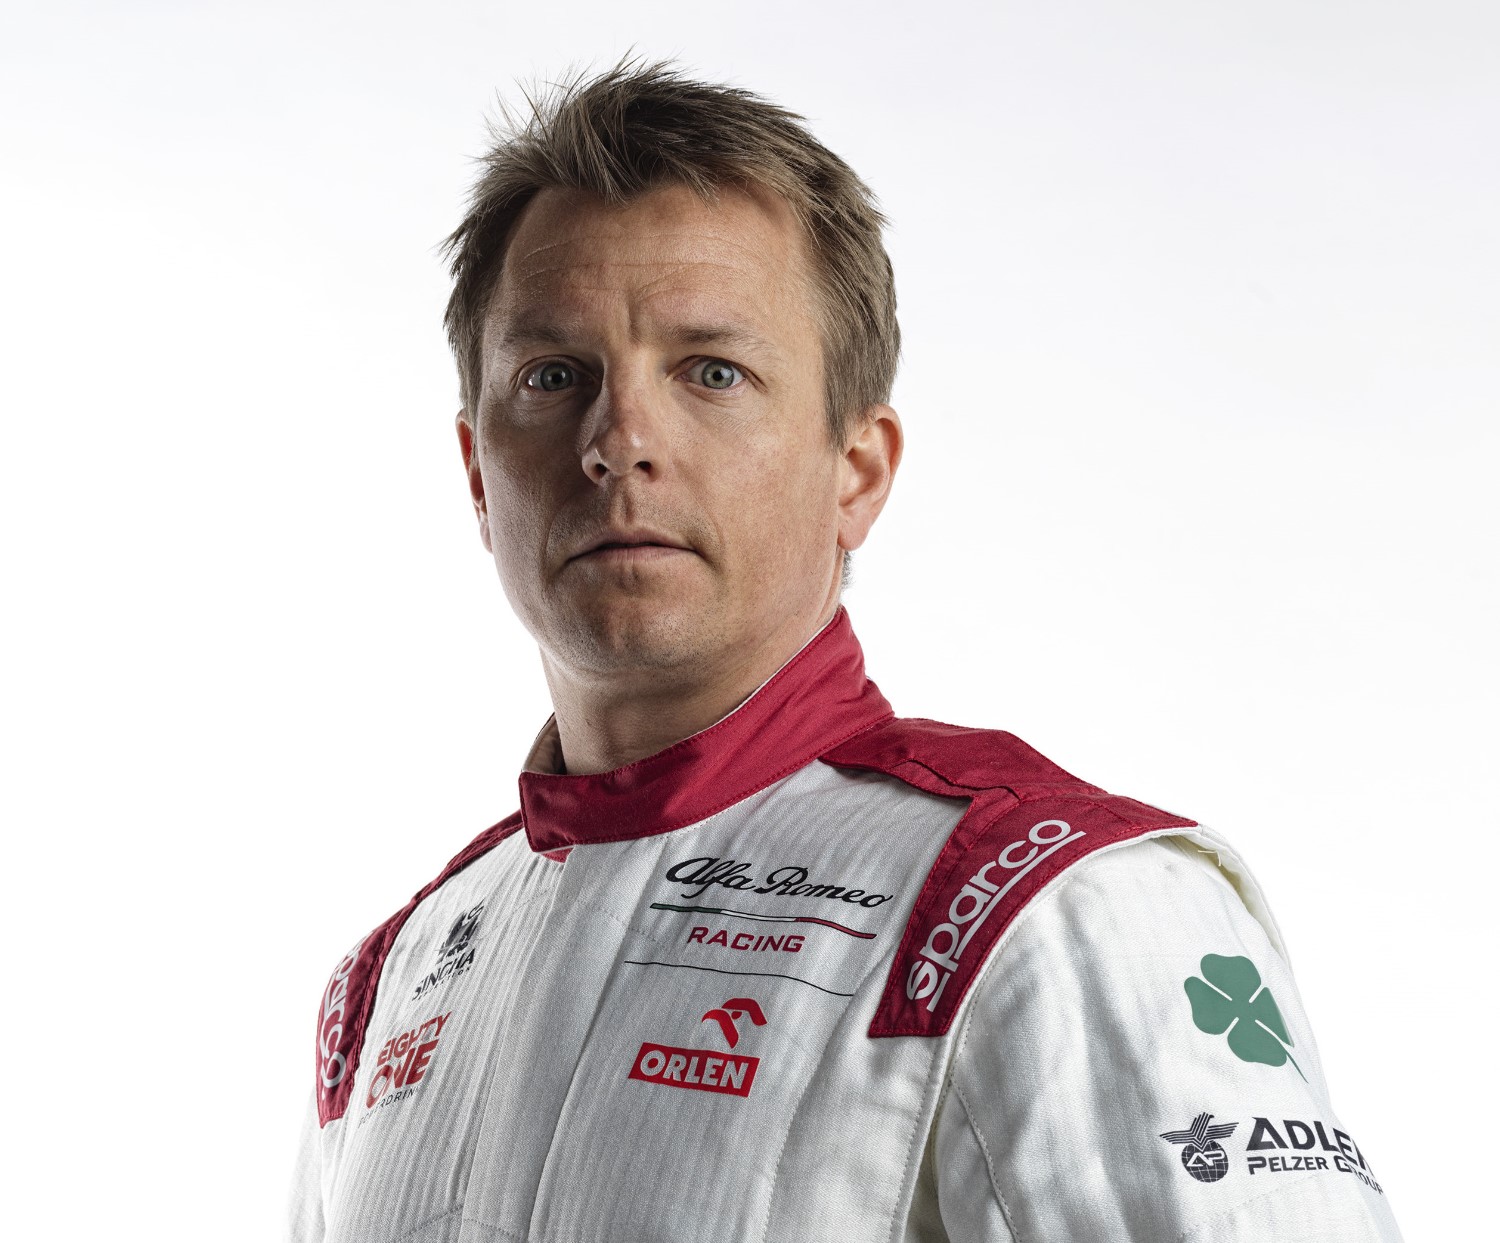 Kimi raikkonen team principal